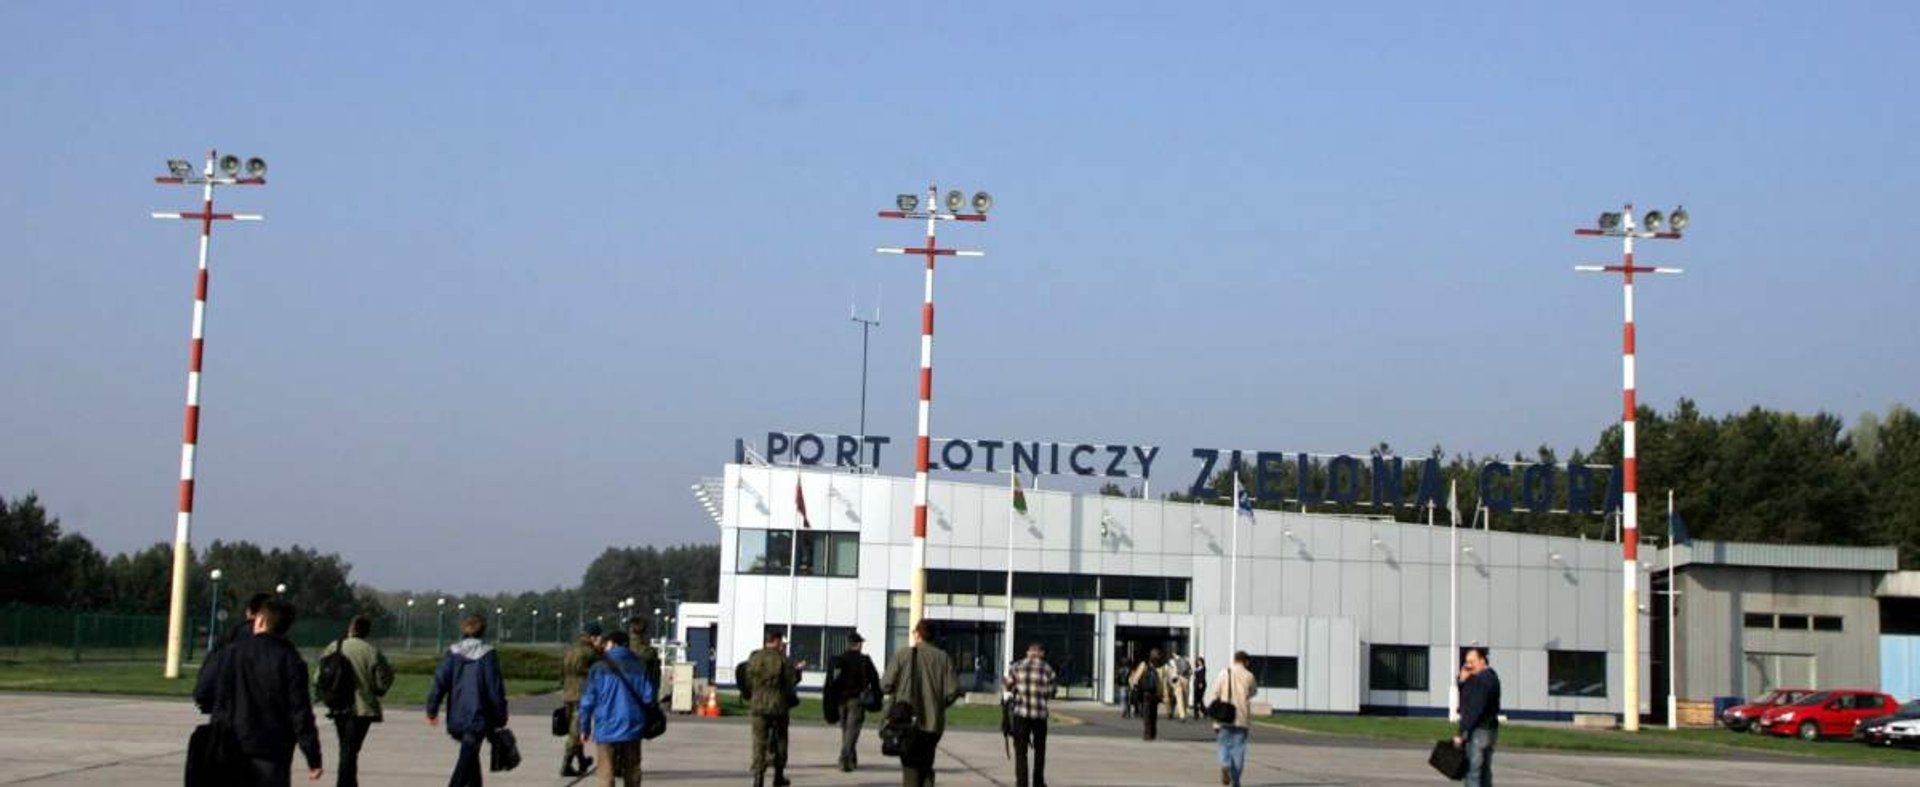 Lotnisko w Zielonej Górze zdecydowało o wstrzymaniu lotów w związku z panującą w kraju trudną sytuacją epidemiczną.